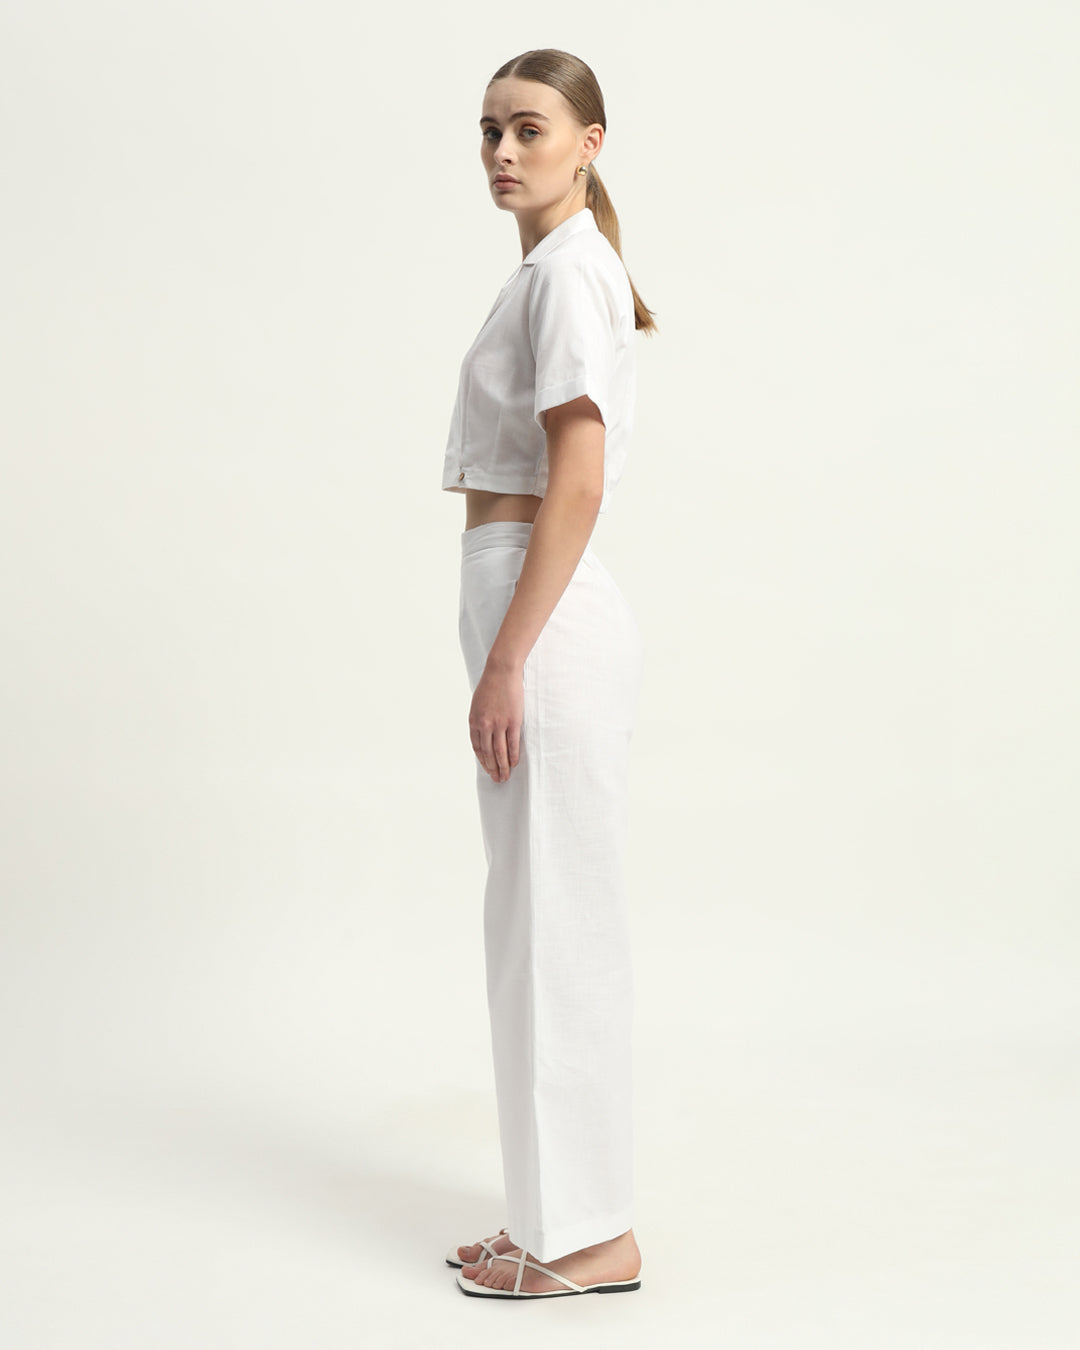 Pants Matching Set- White Lapel Collar